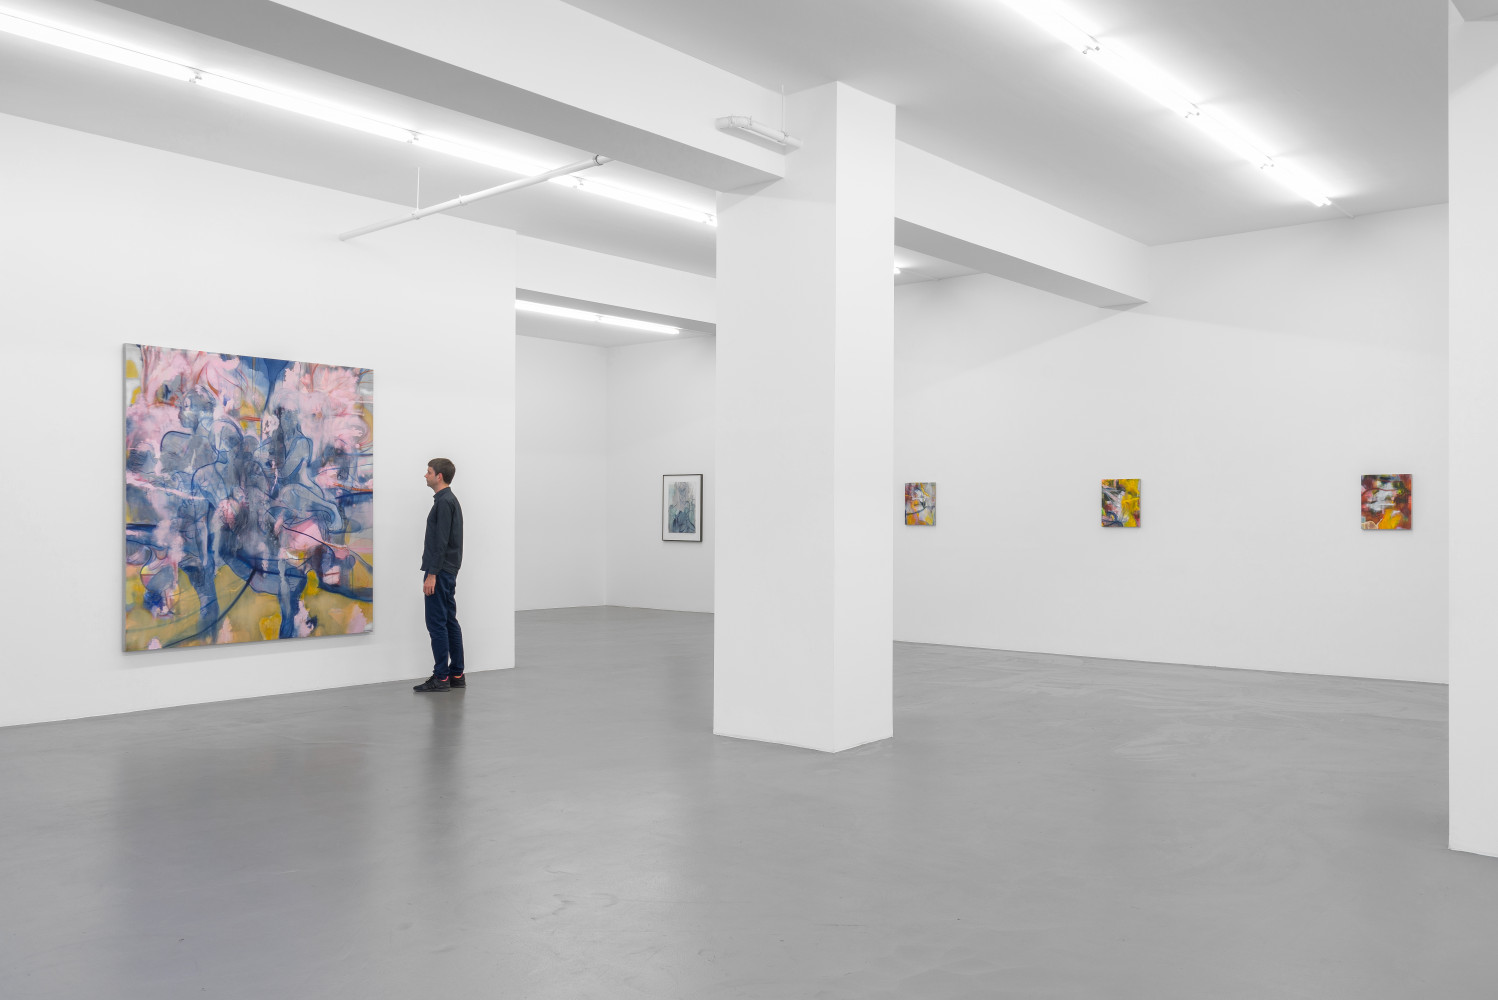 Nigel Cooke, ‘Nigel Cooke – Spring in Fialta’, Installation view, Buchmann Galerie, 2019